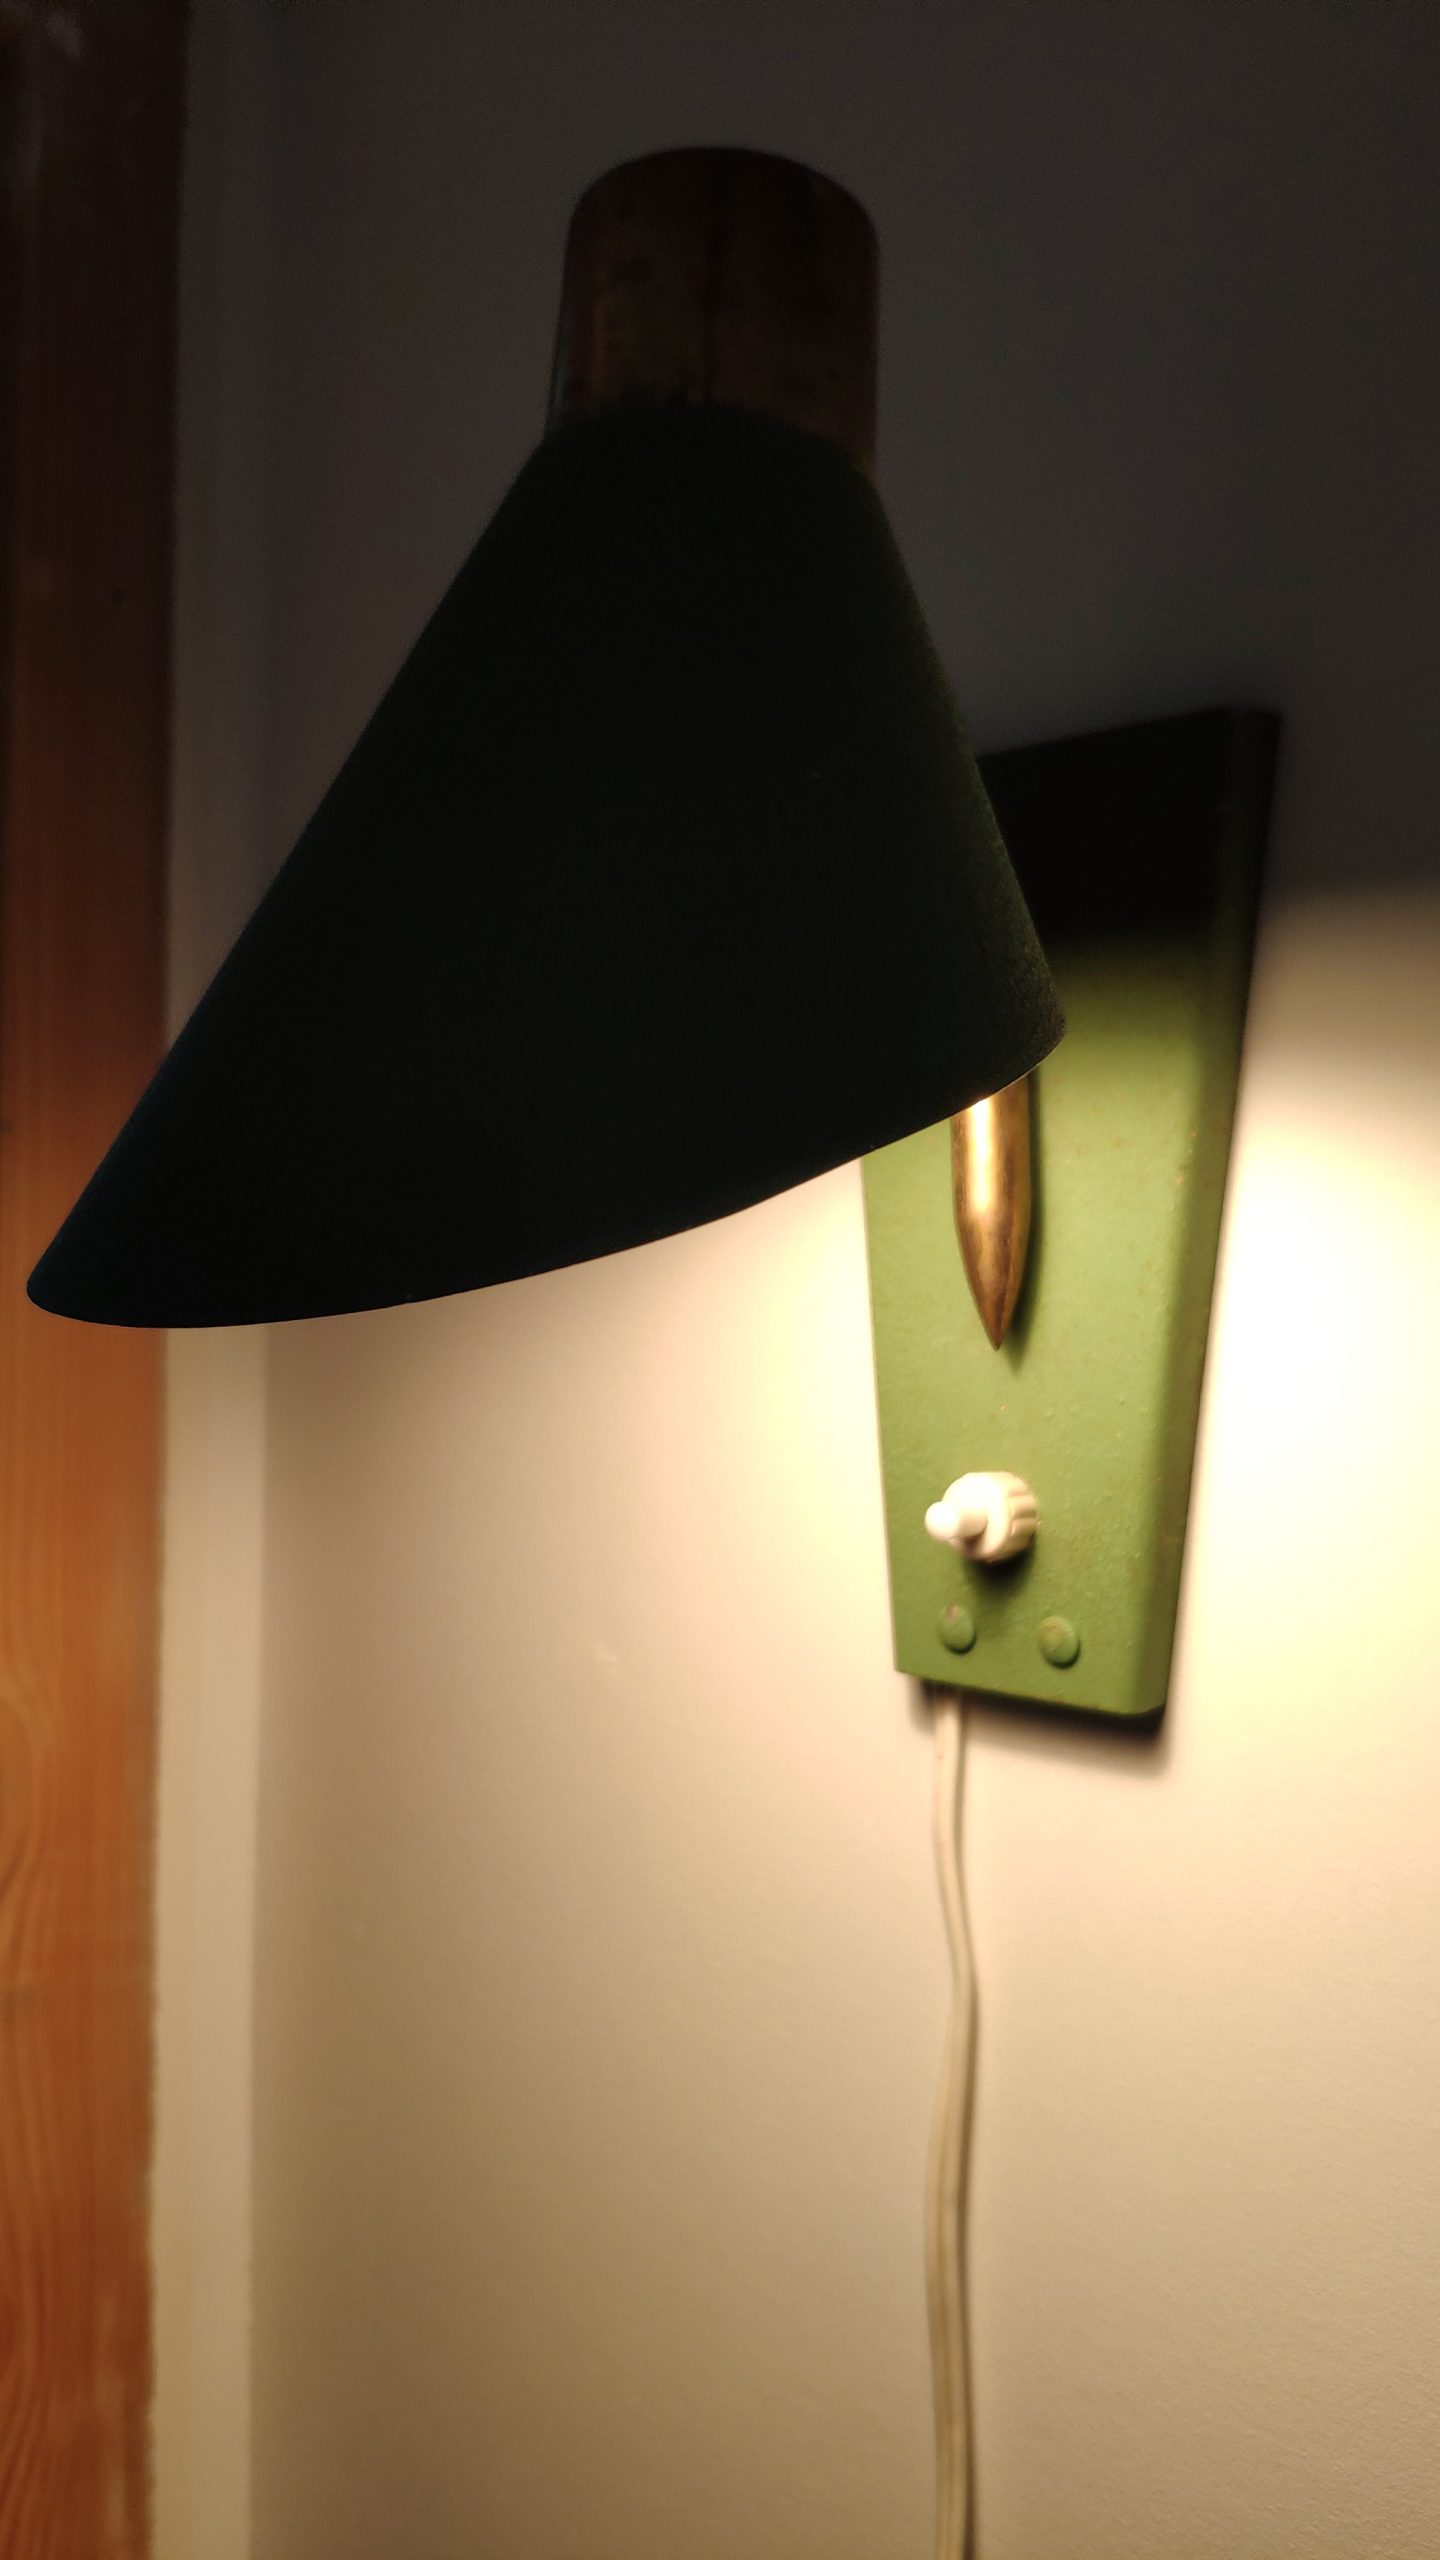 Pied de Lampe rétro des années 1950 - brokepoque - Retro Lamp 1950